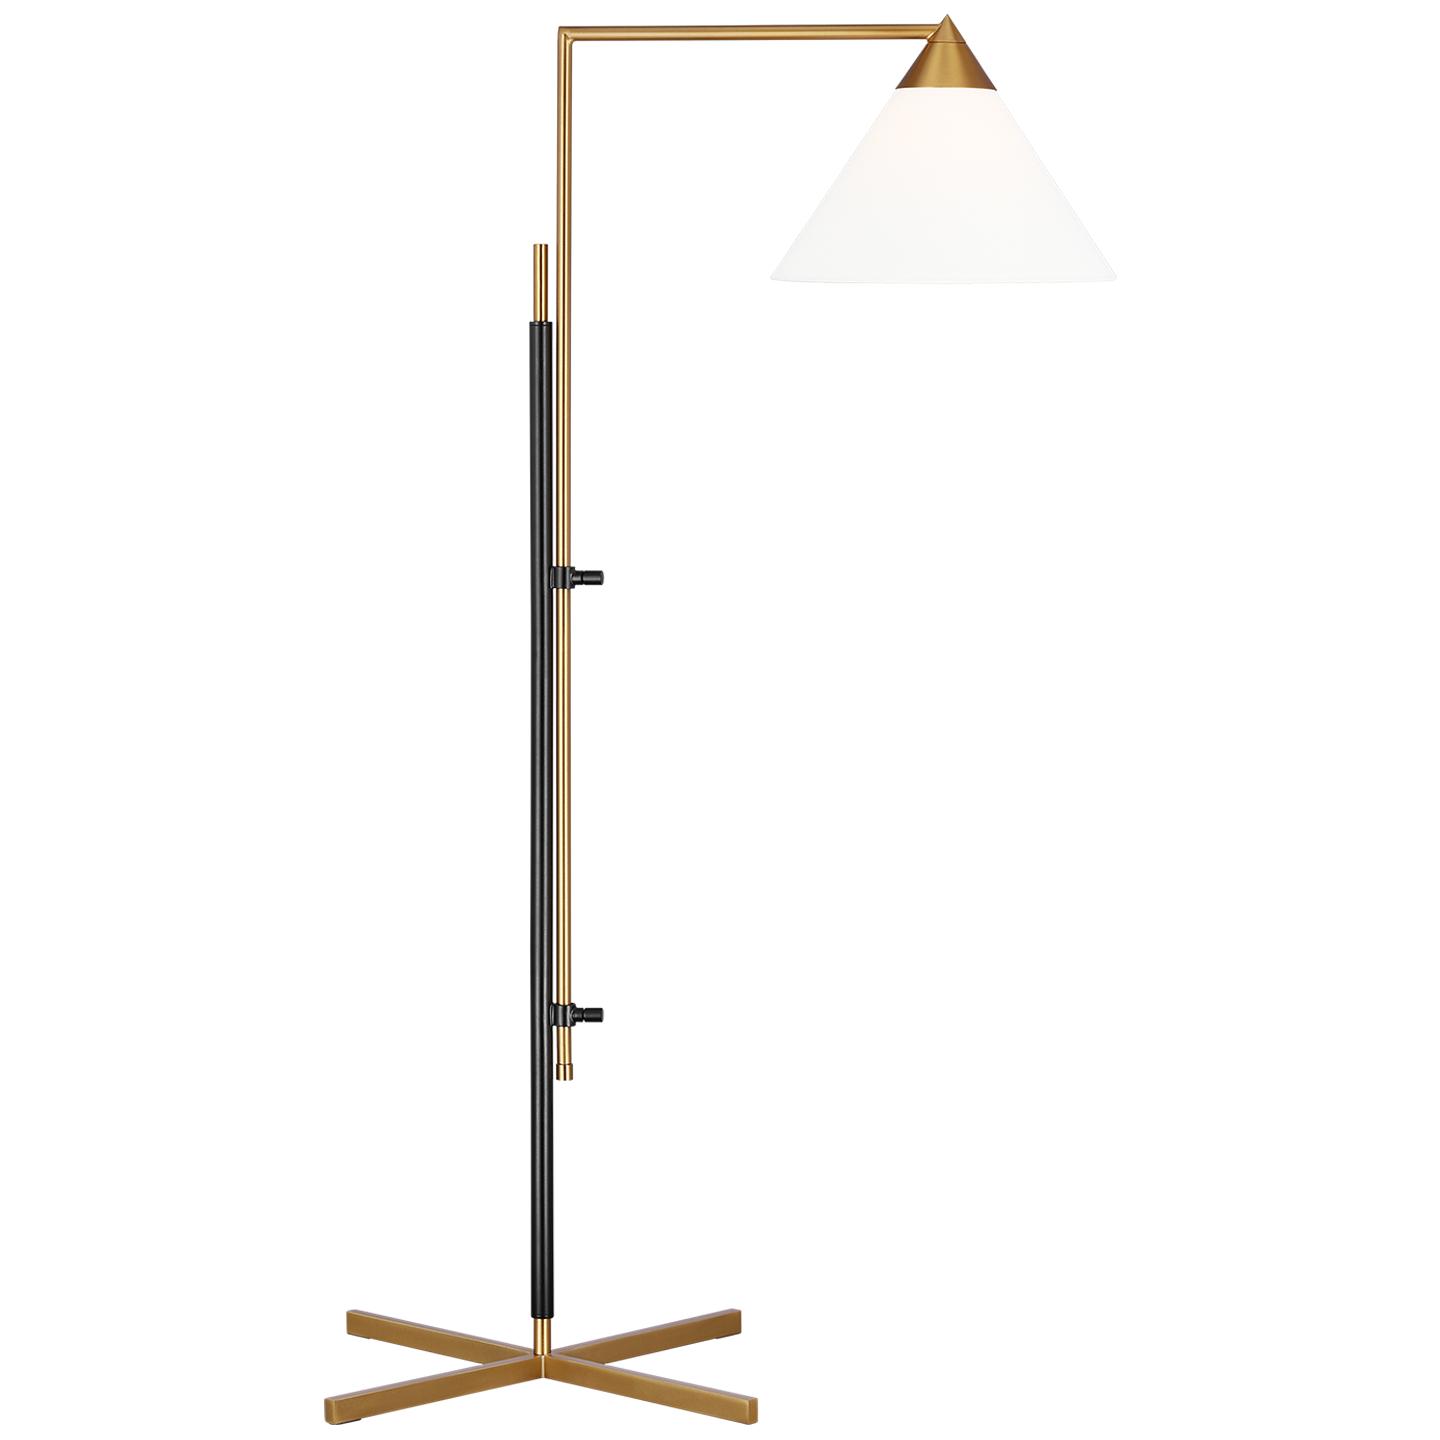 Franklin 1-Light Task Floor Lamp